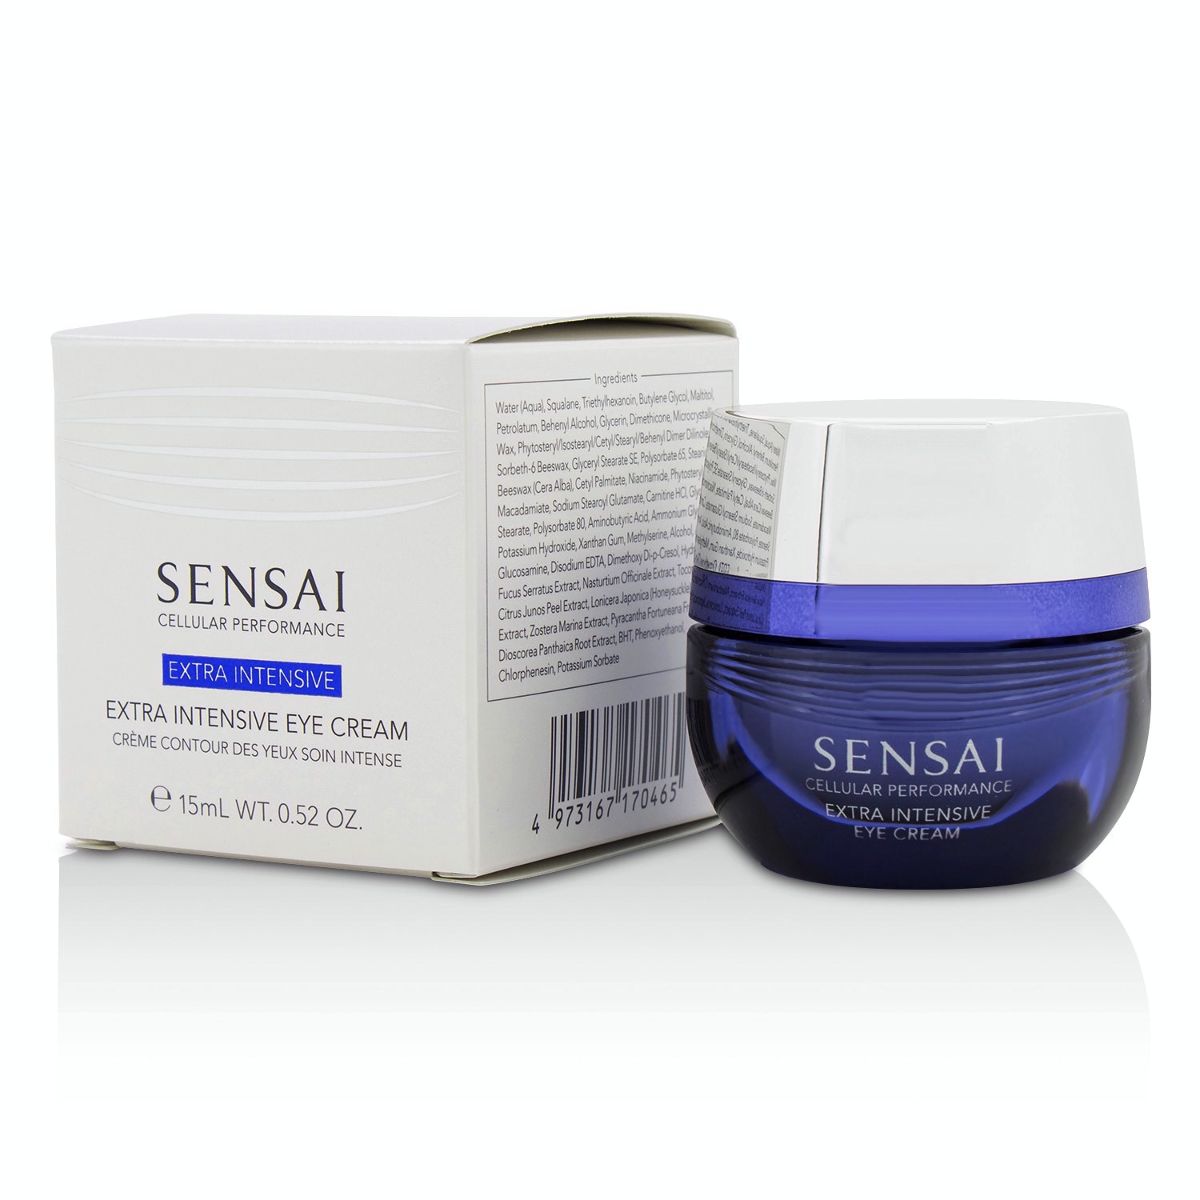 Sensai Cellular Performance Extra Intensive Eye Cream Kanebo Image